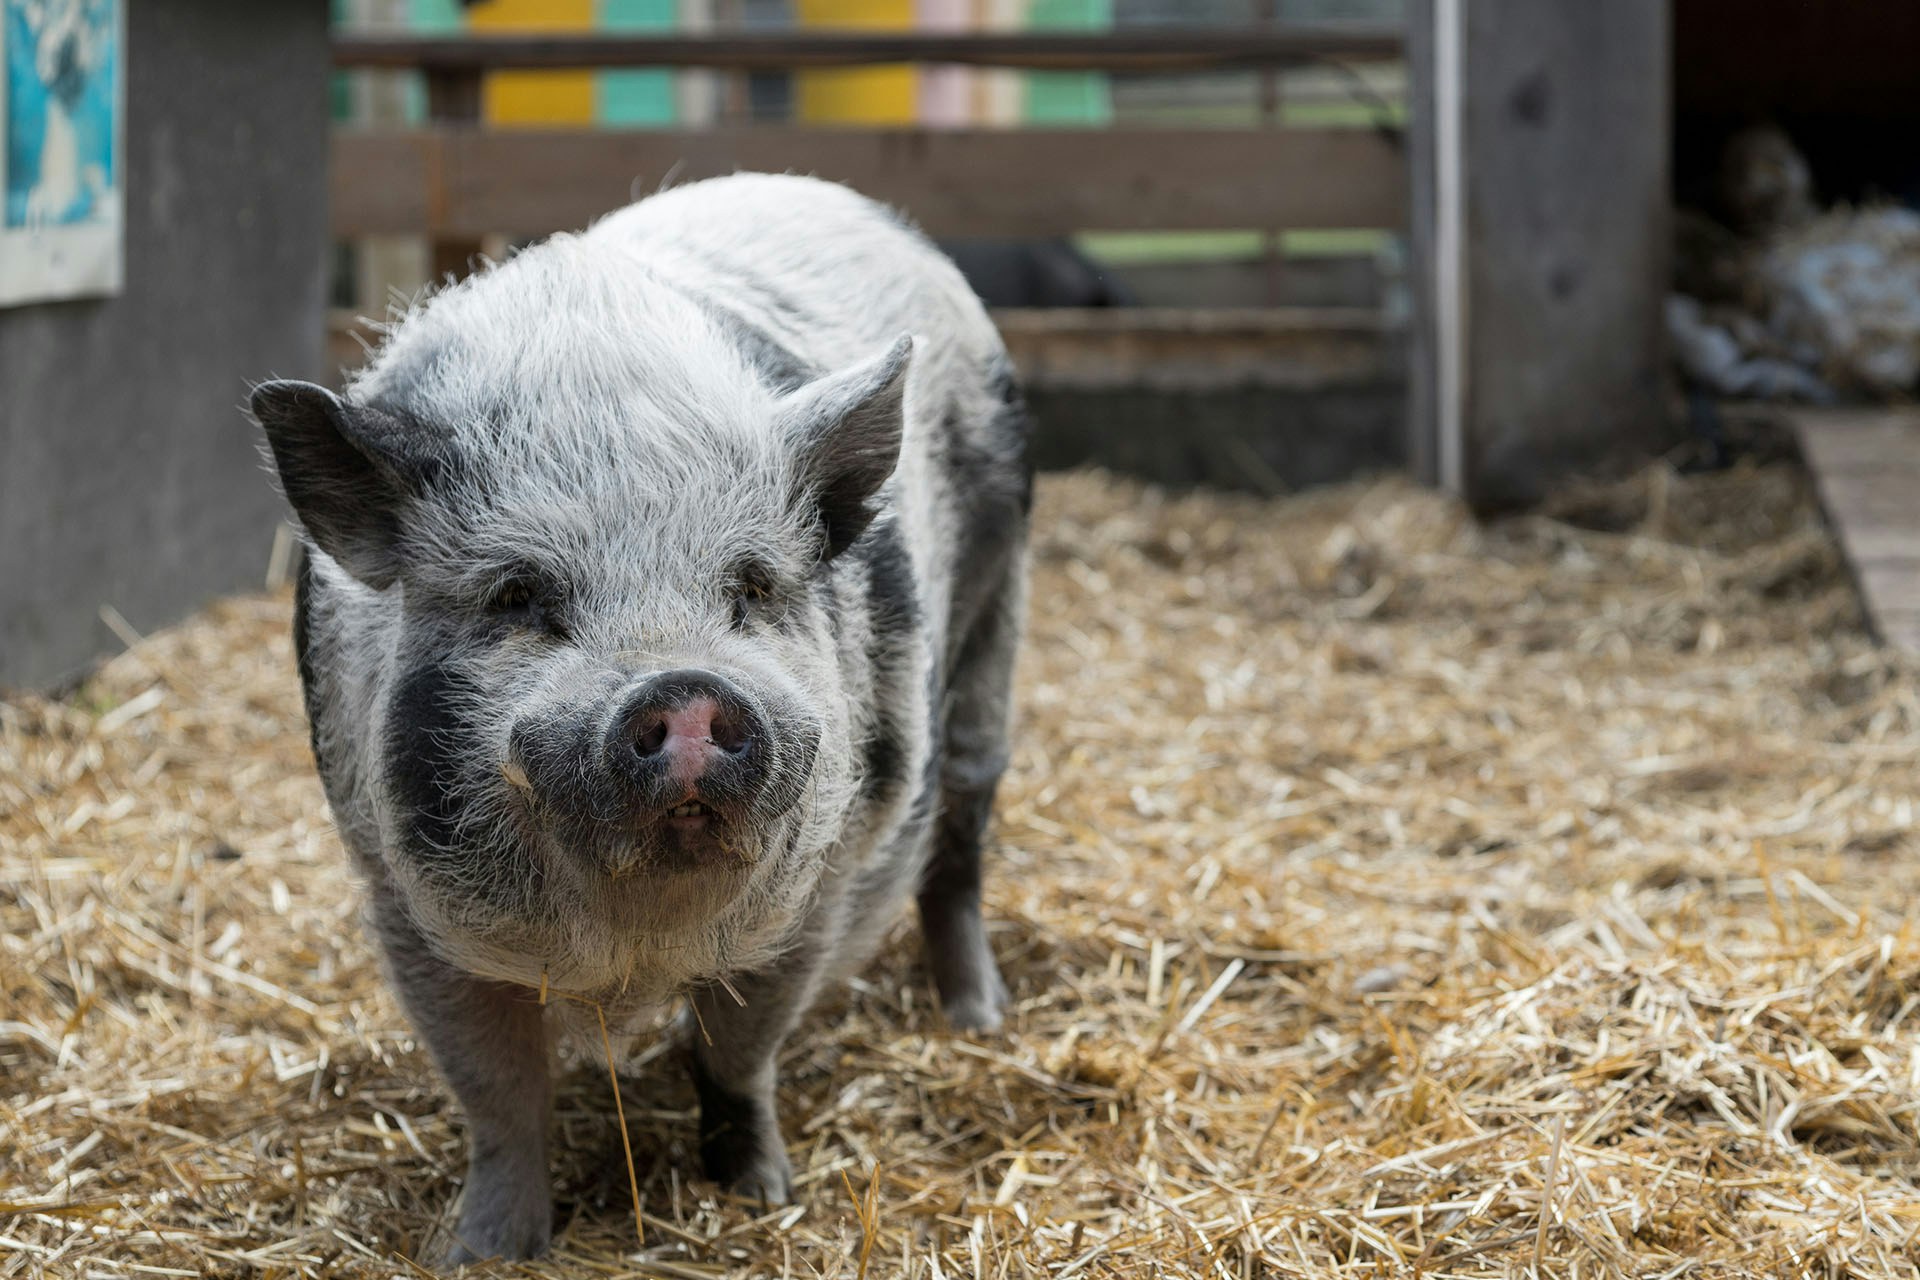 Pig in Barn